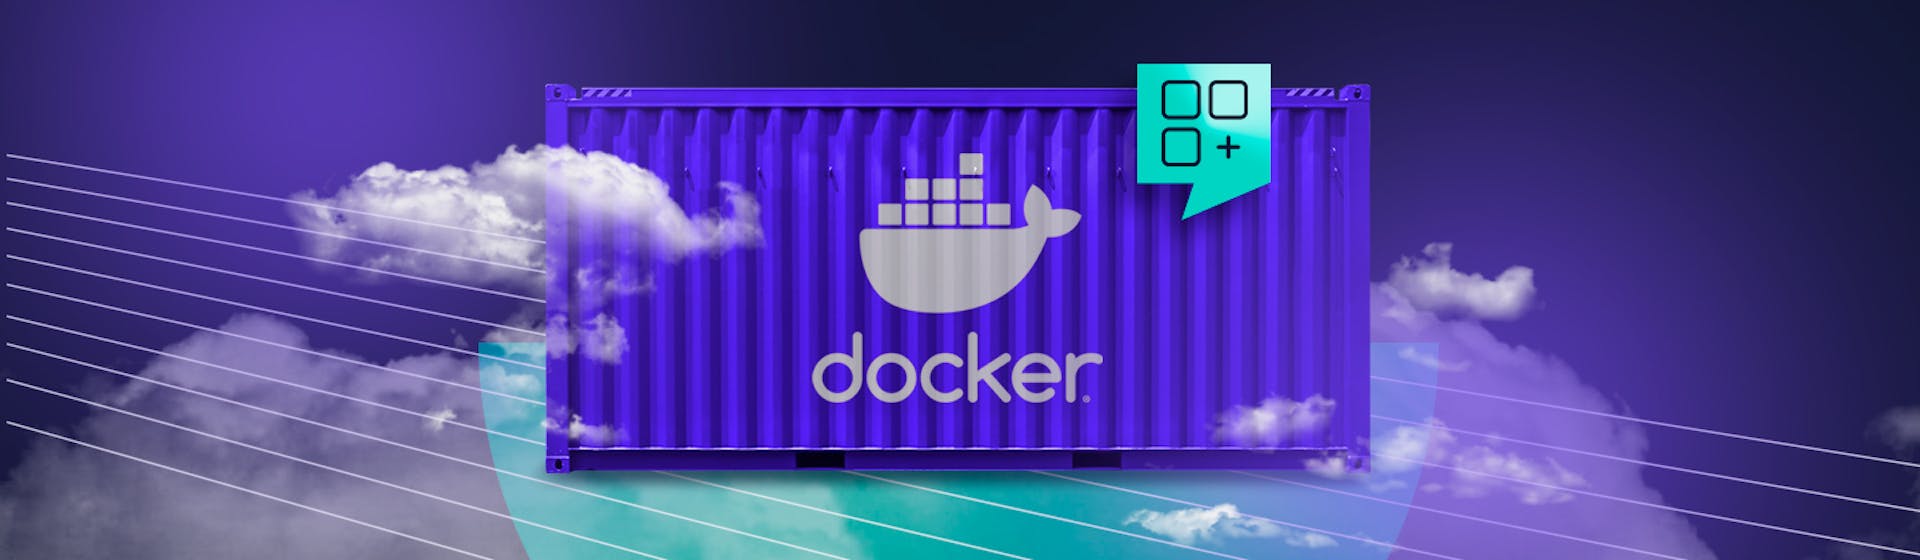 ¿Qué es Docker? ¡Desarrolla tus apps de una manera más fácil!